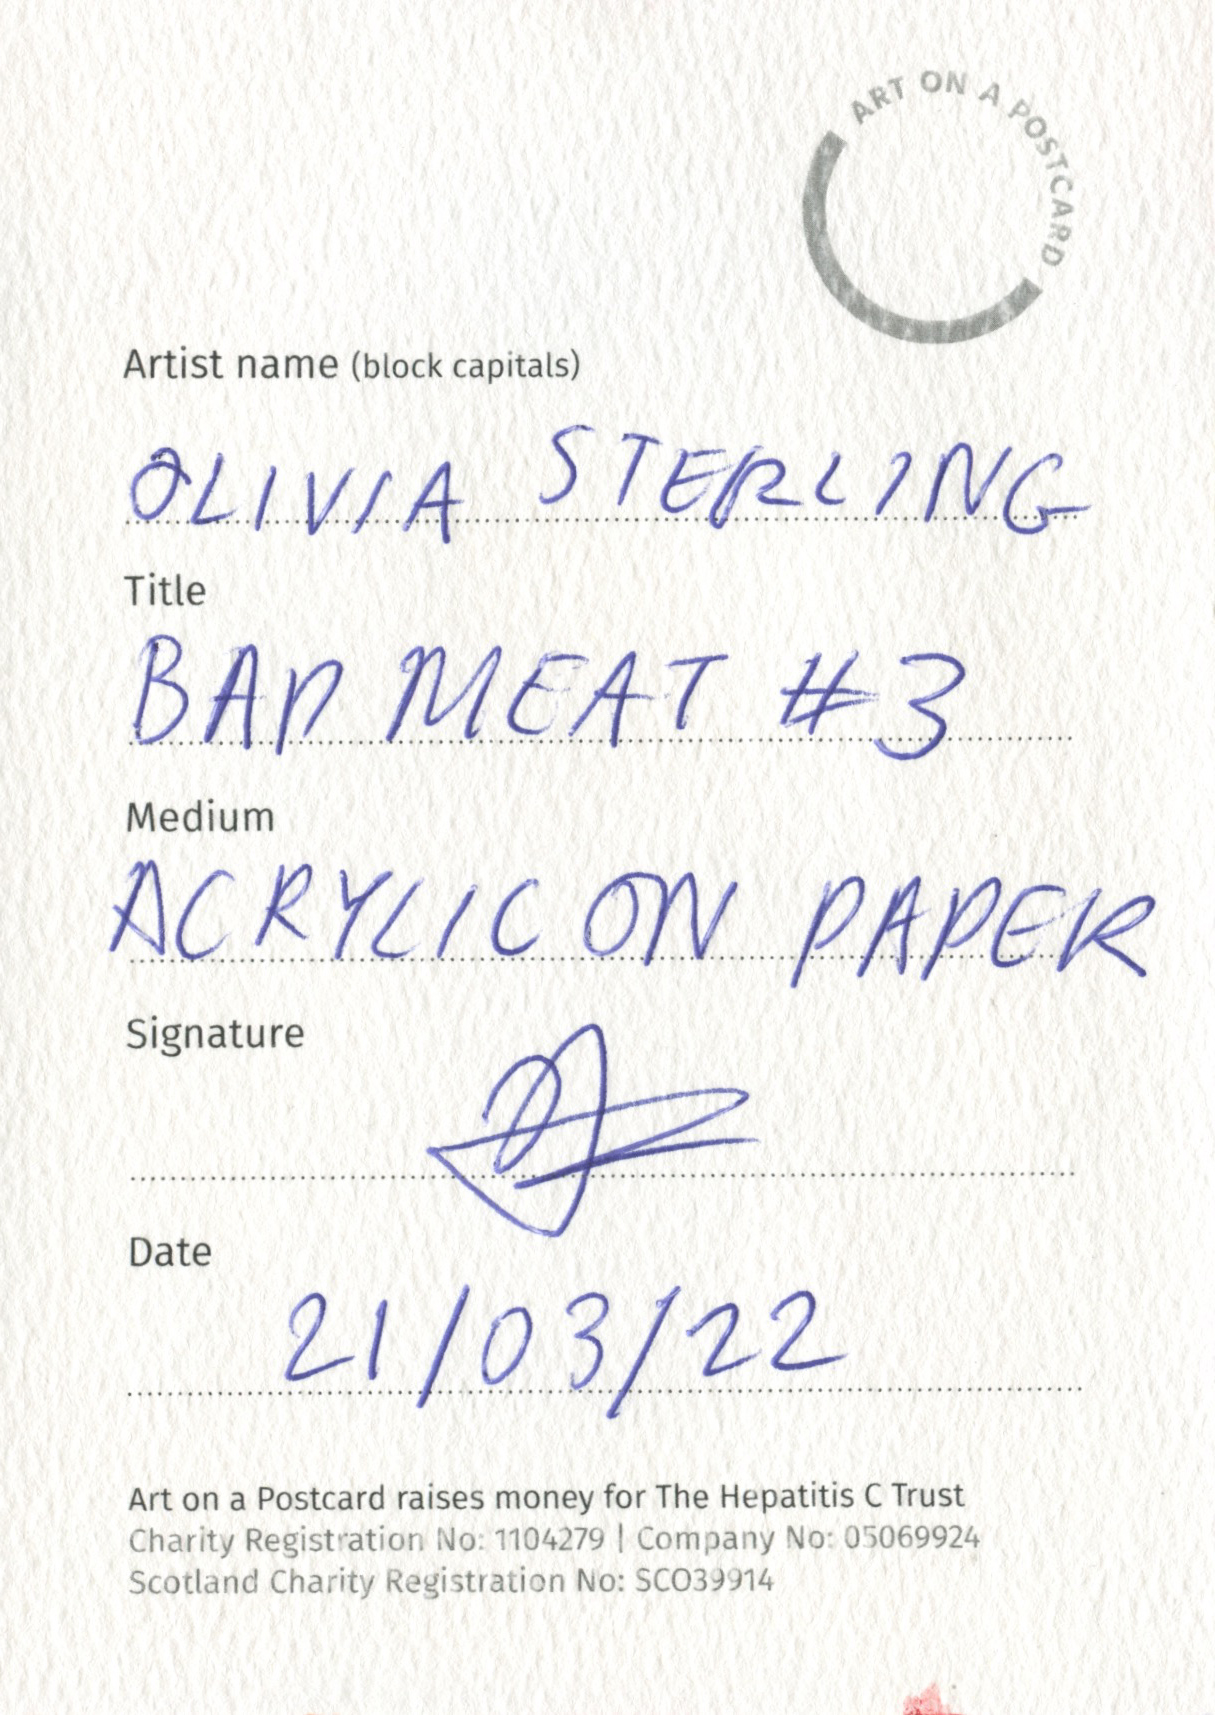 38. Olivia Sterling - Bad Meat 3#